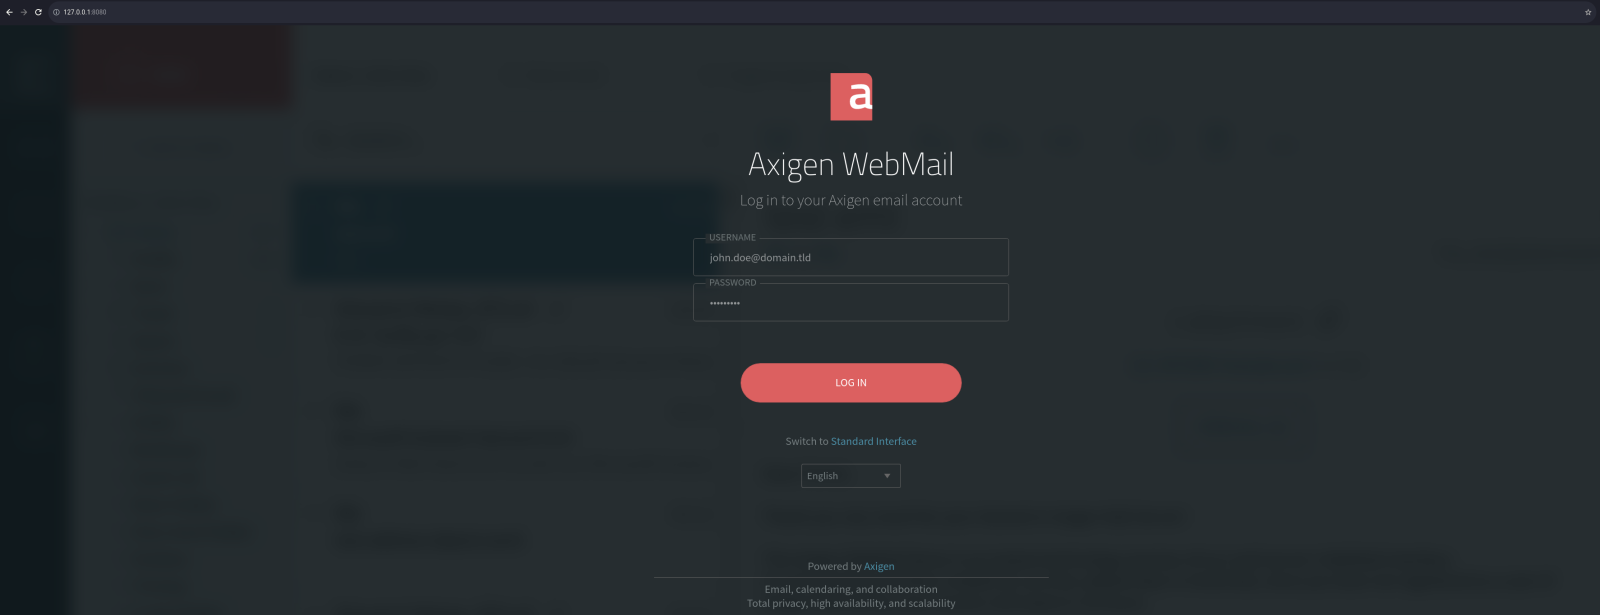 axigen-webmail-login